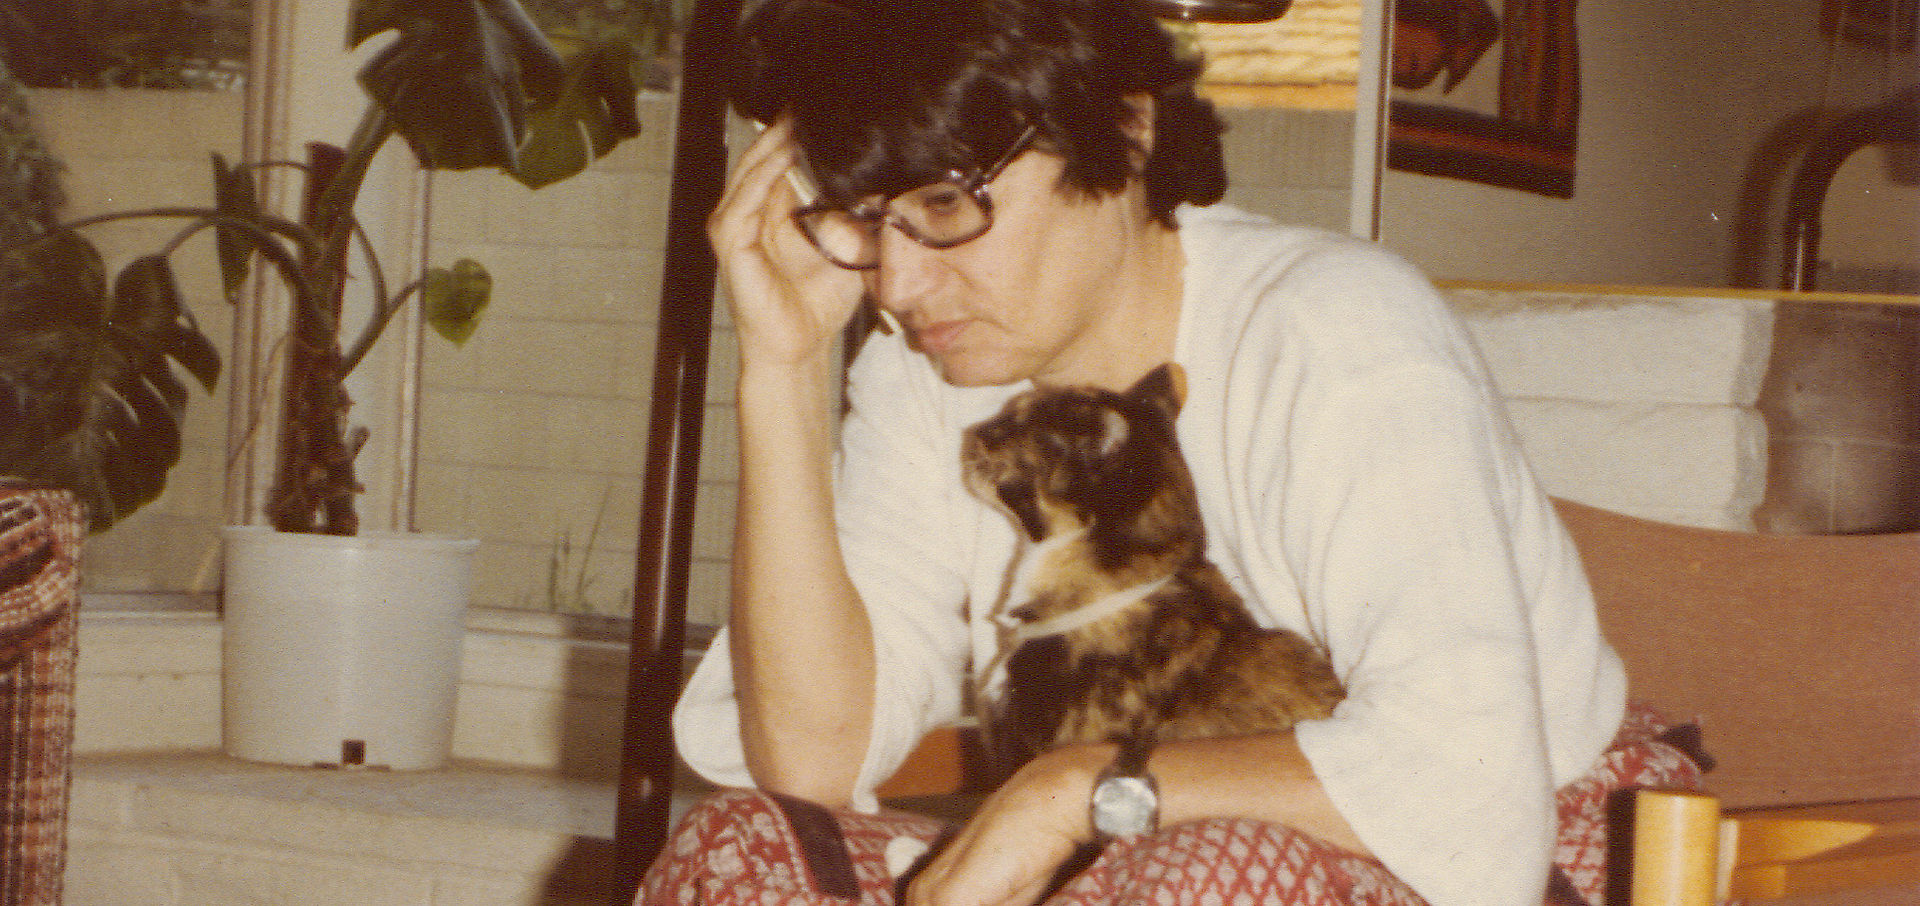 Älteres Foto von einer Frau mit Brille und schwarzen Haaren, die mit einer Katze auf dem Schoß an einem Couchtisch sitzt und nachdenkt.